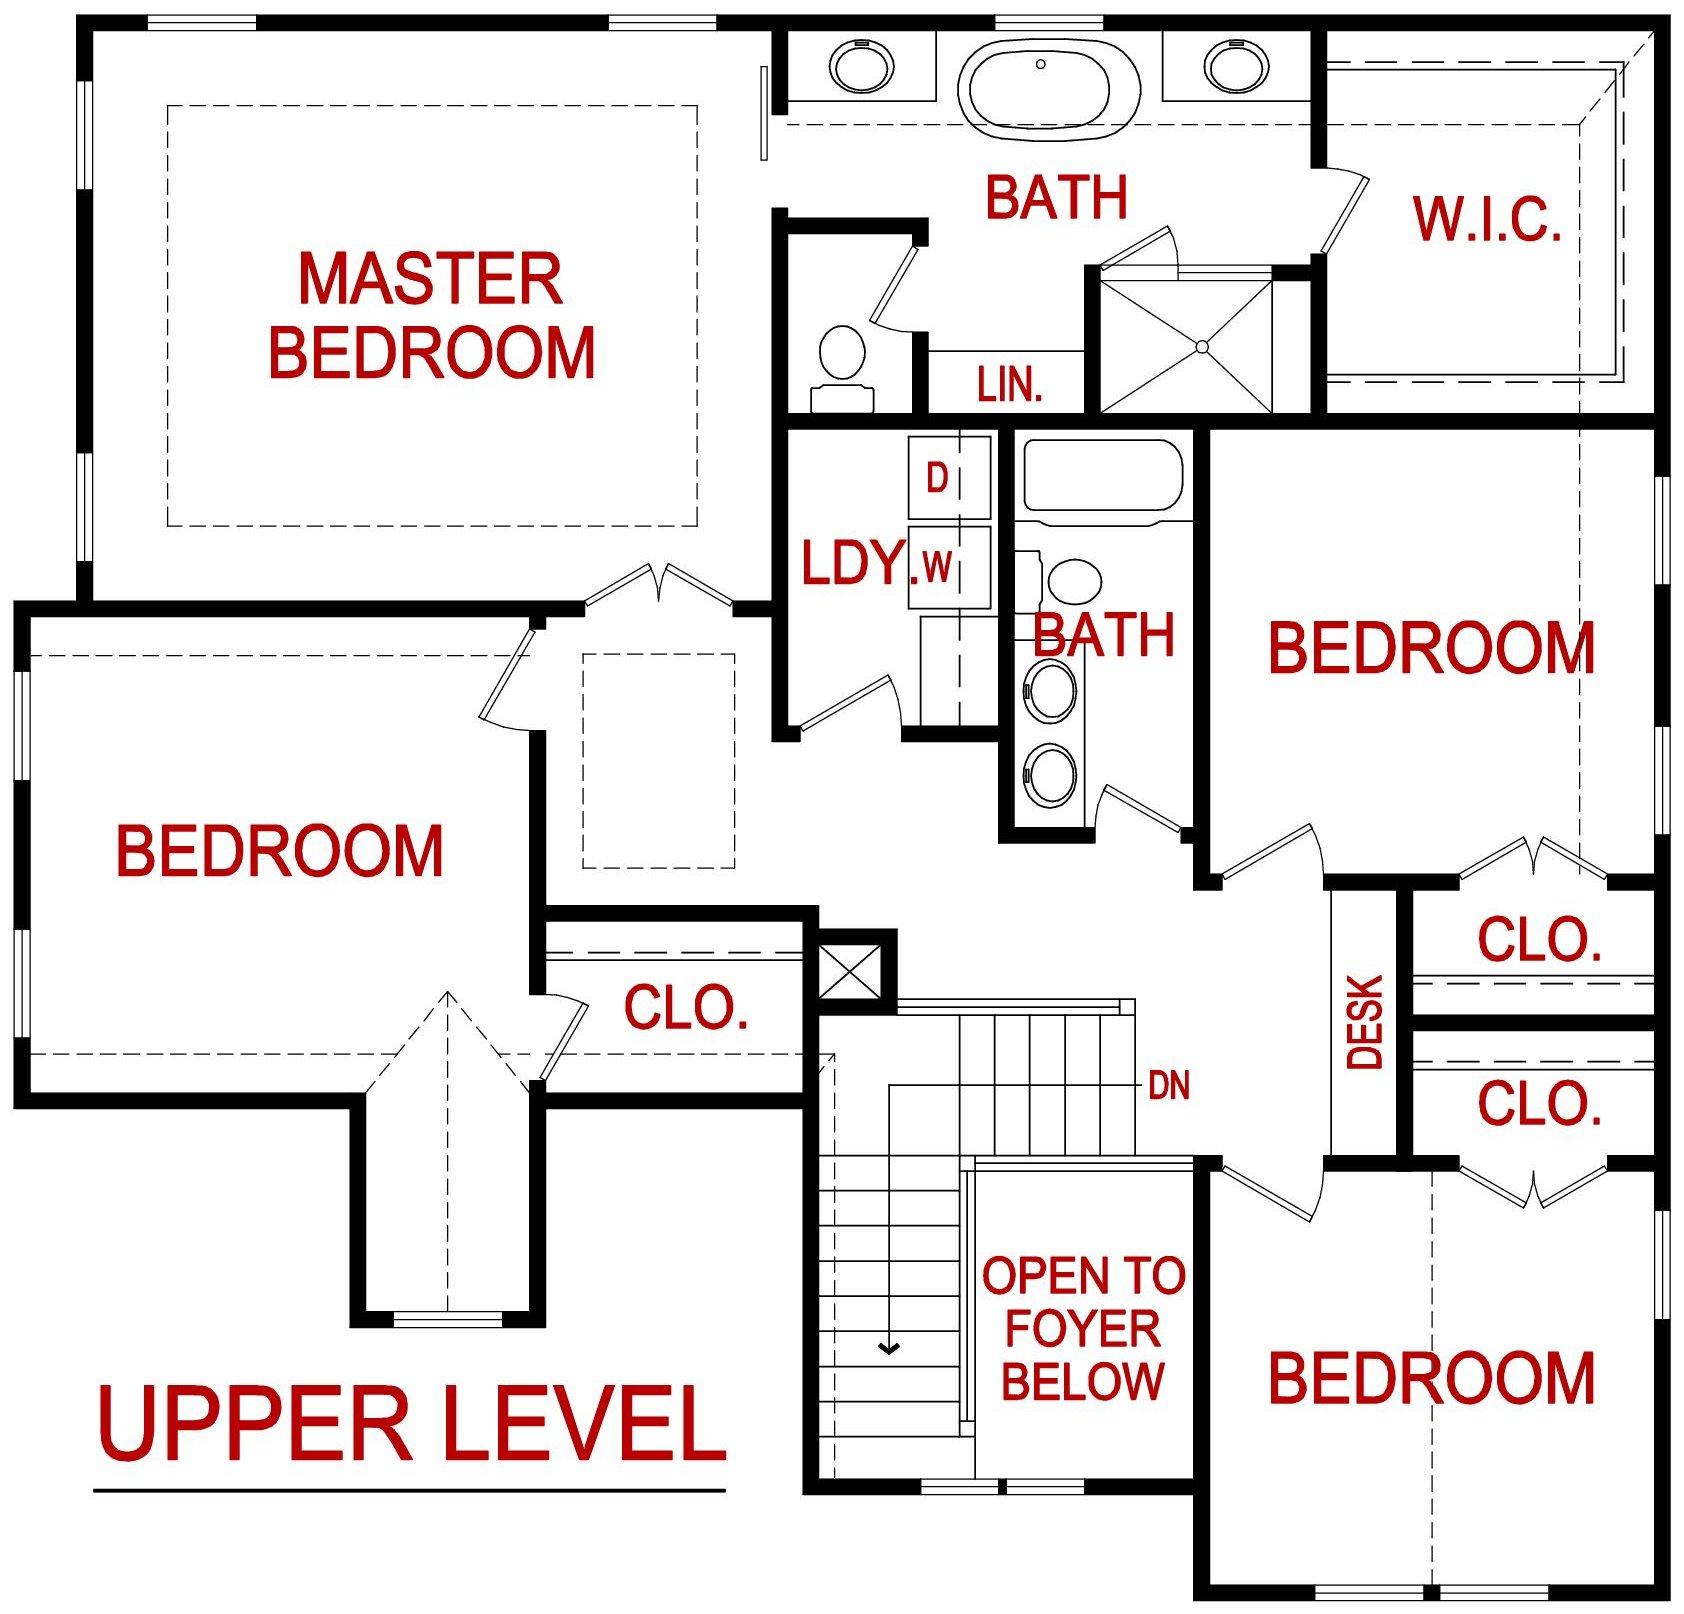 Upper level floor plan for the clover model from lambie custom homes